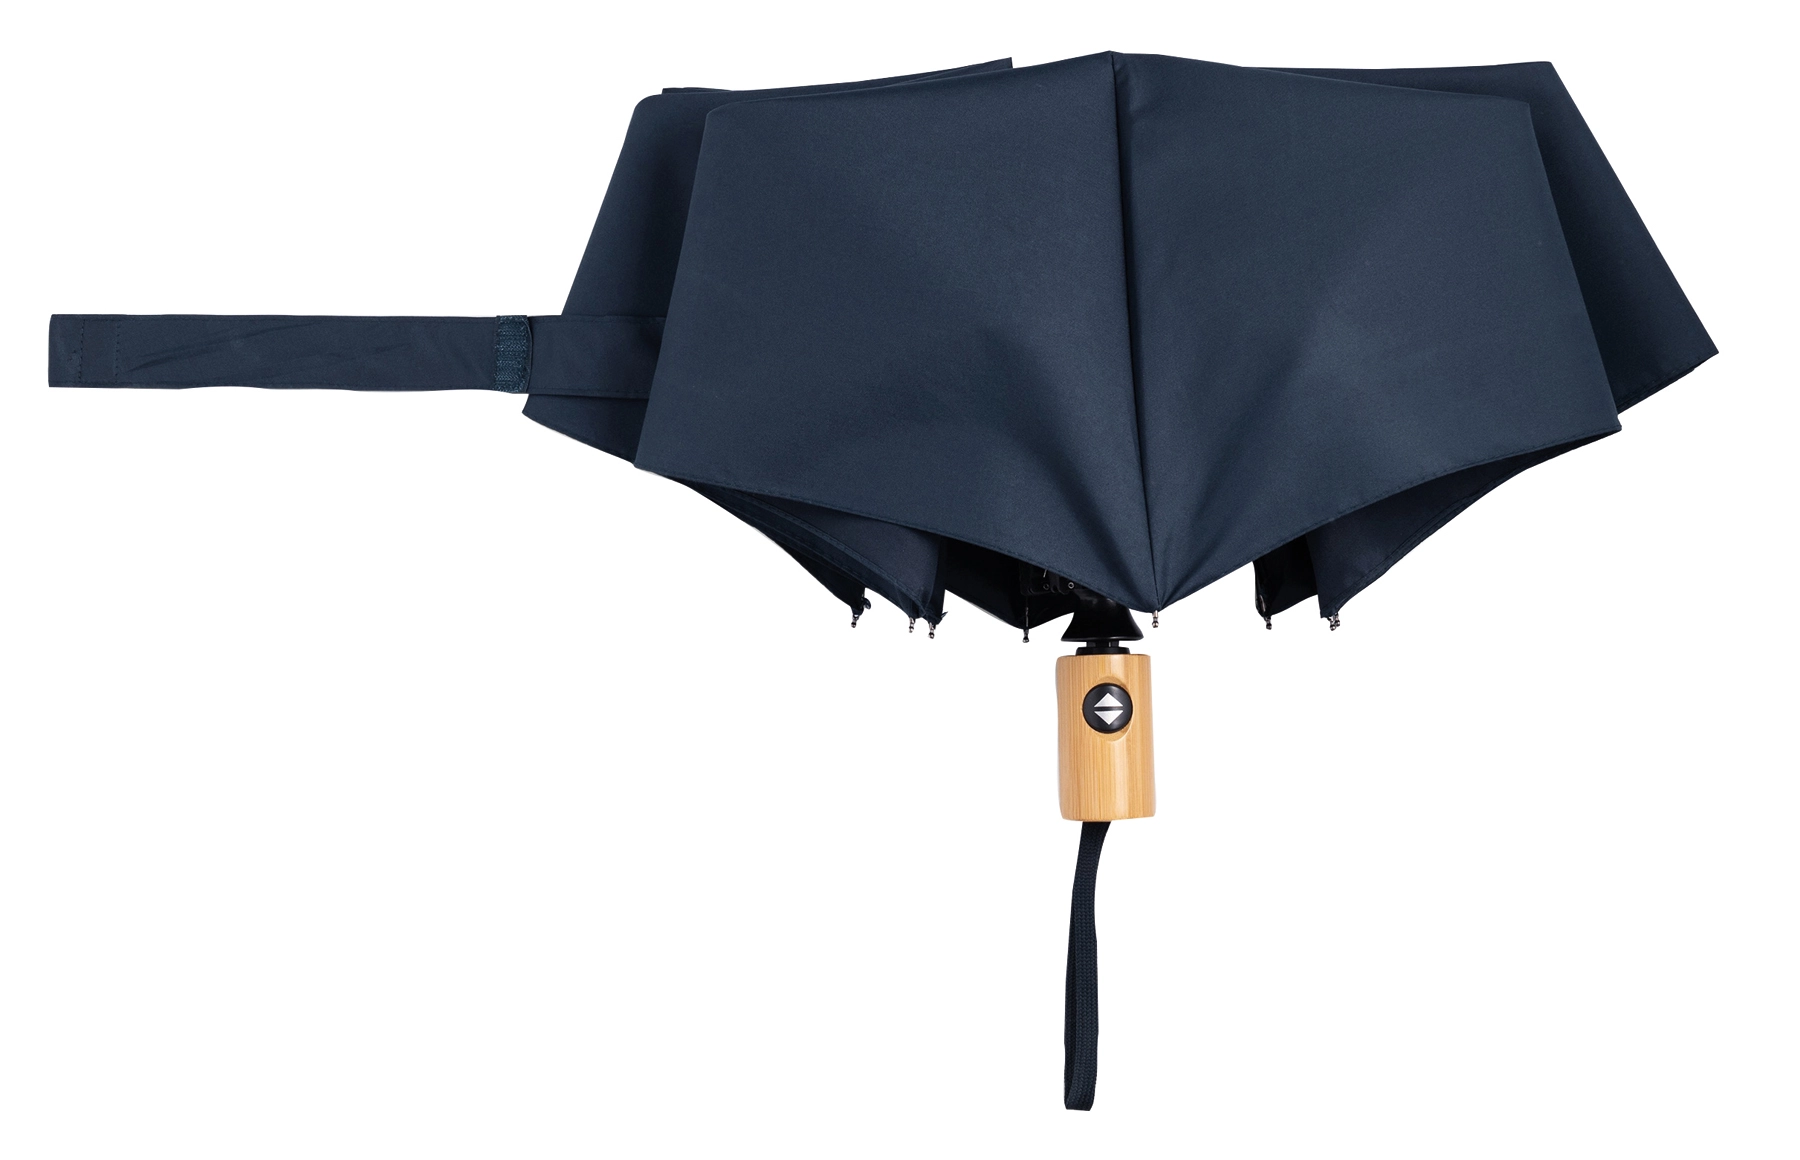 Automatyczny, wiatroodporny parasol kieszonkowy CALYPSO, granatowy 56-0101270